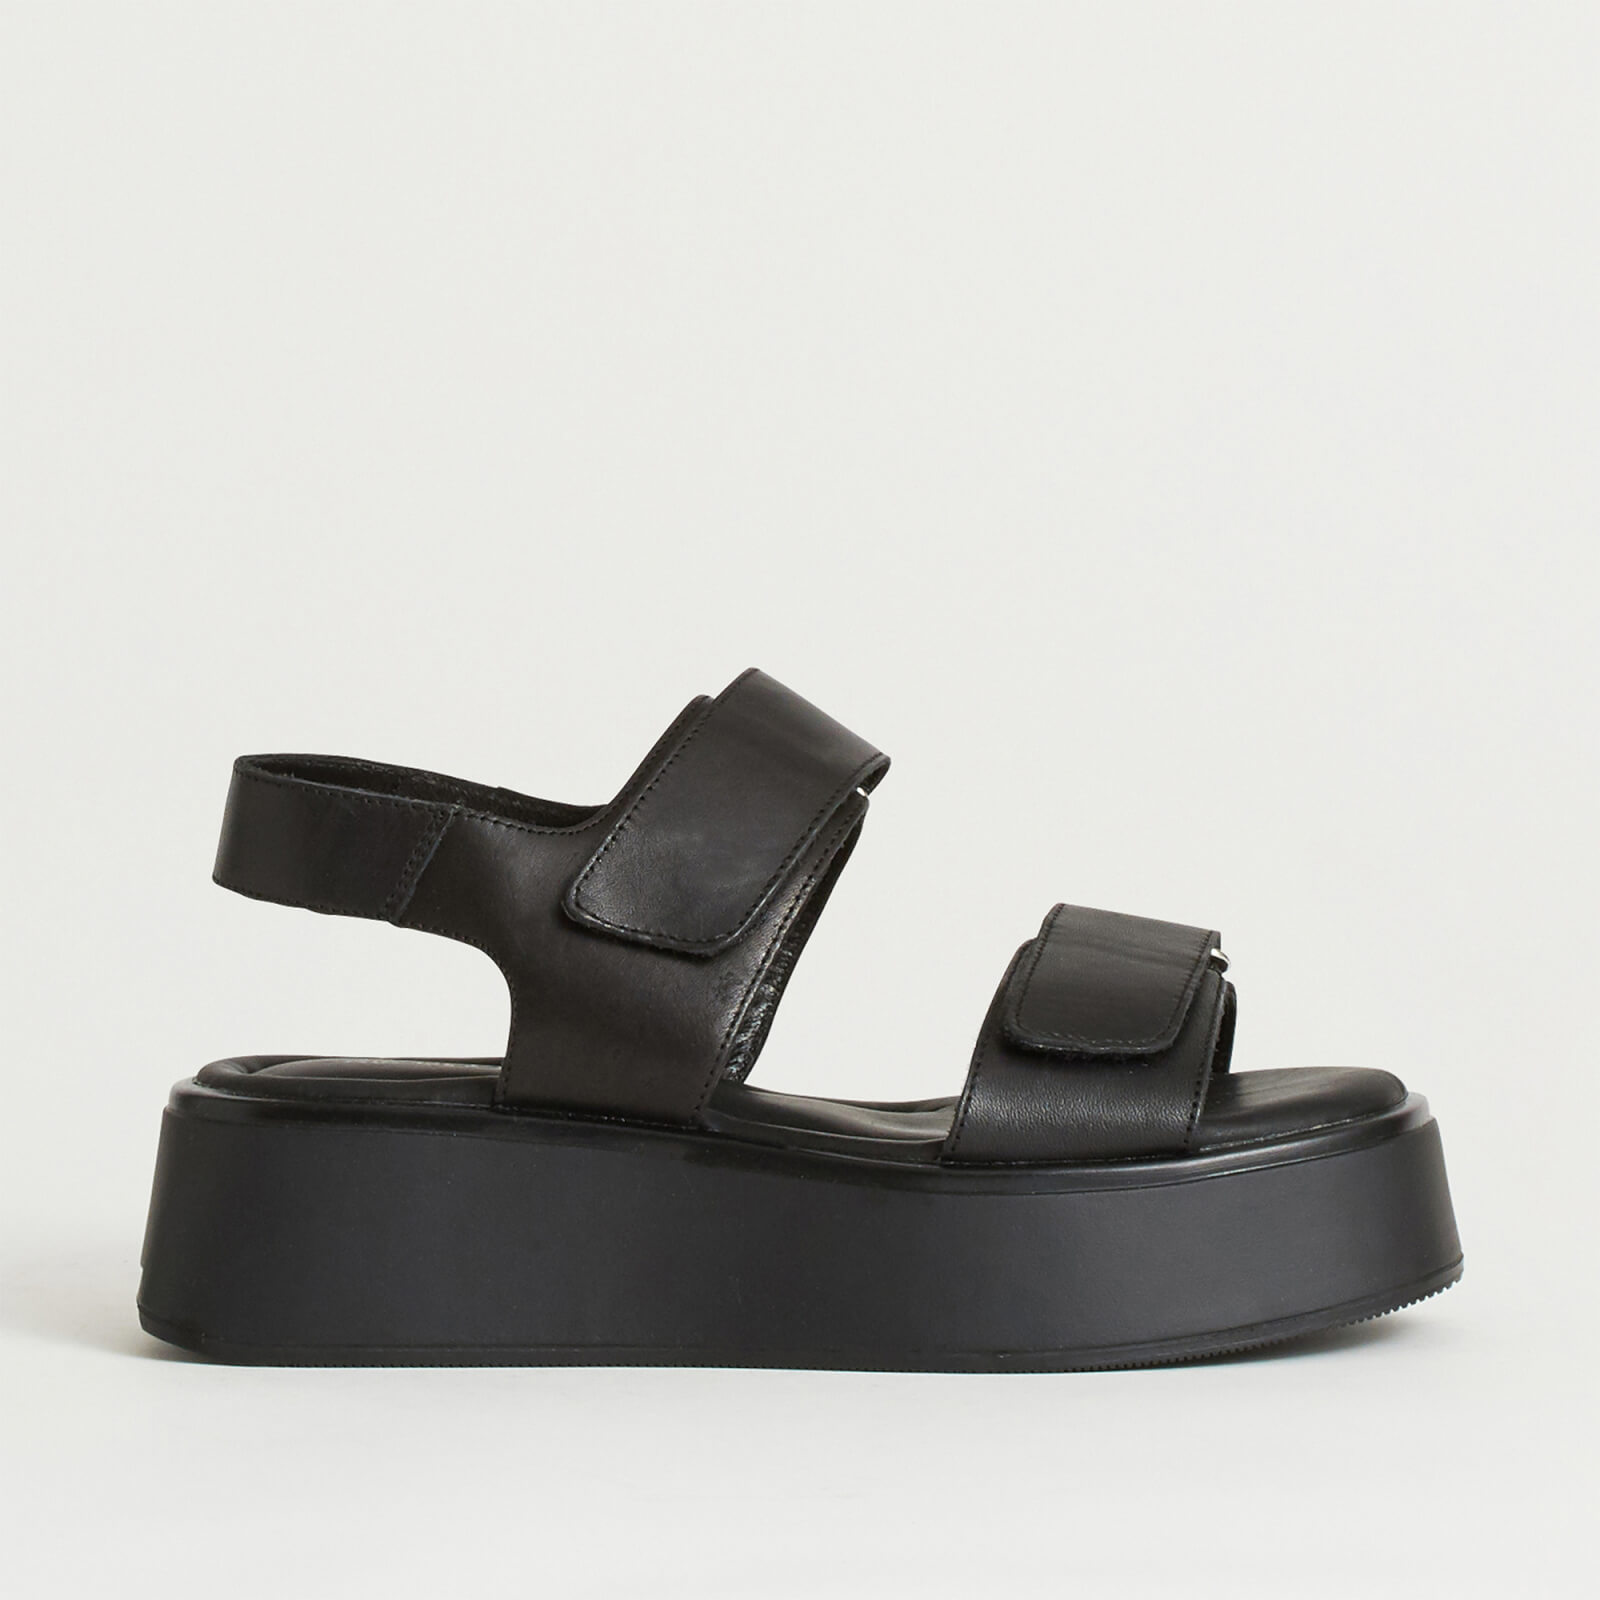 Vagabond Women's Courtney Leather Double Strap Sandals - Black/Black